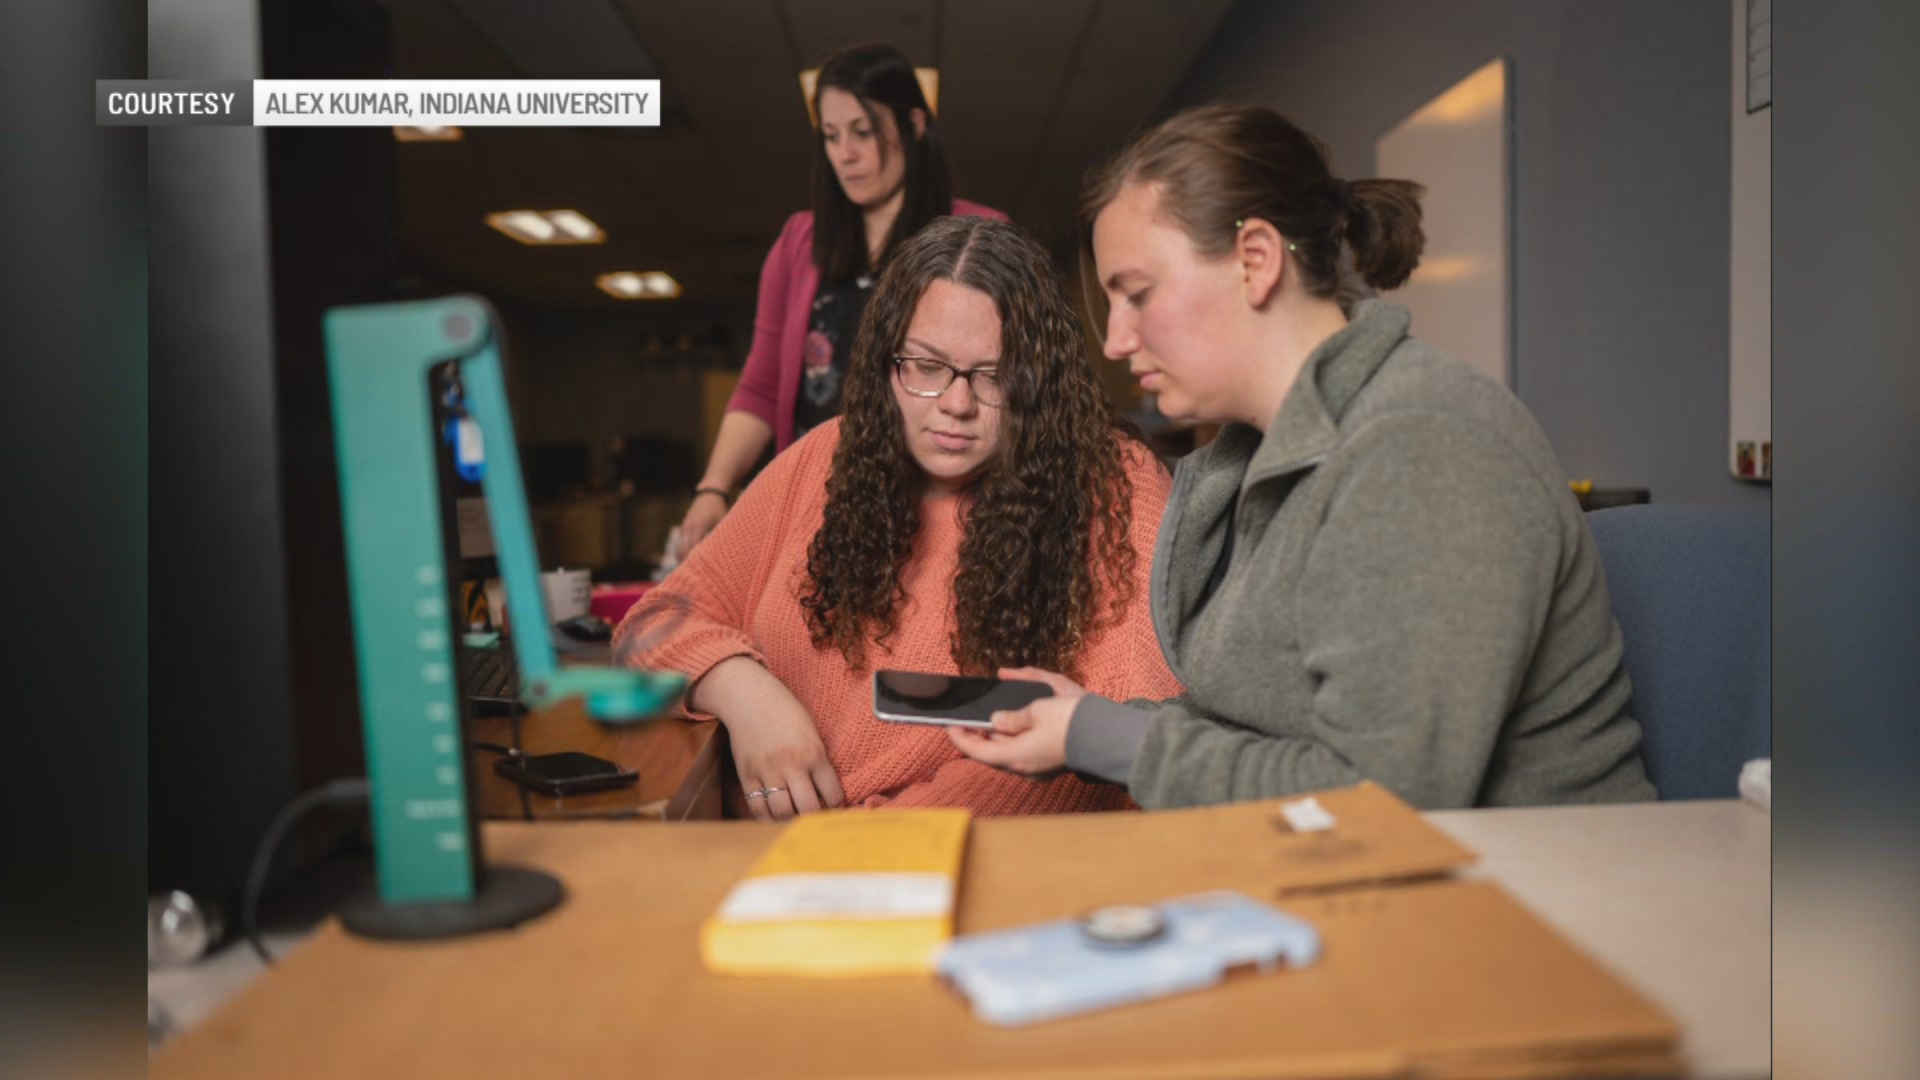 Students help crack crime cases in digital forensics internship